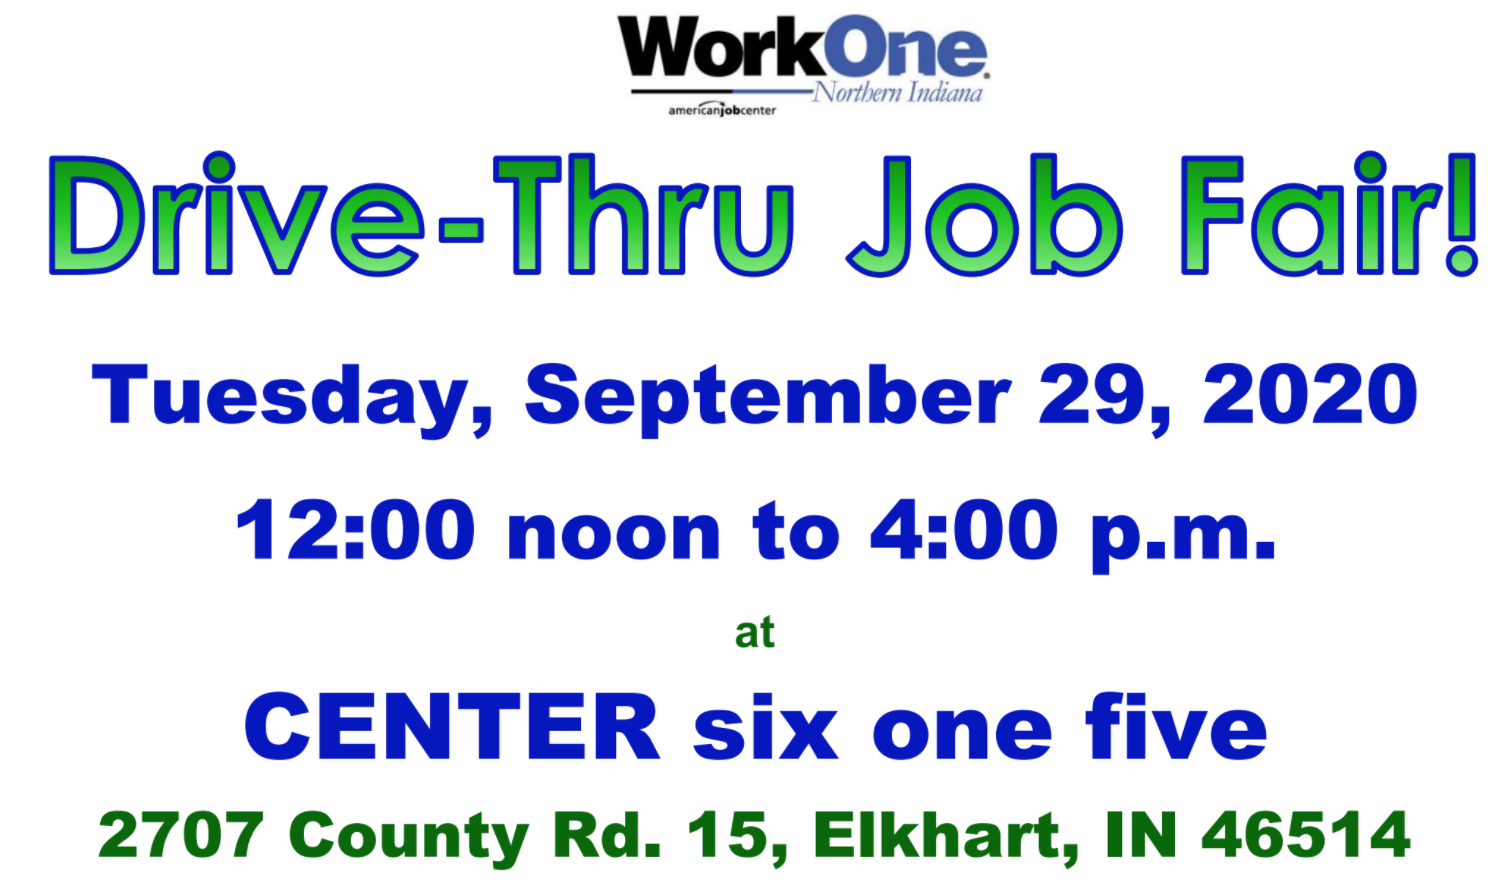 Elkhart Drive-thru Job Fair – September 29